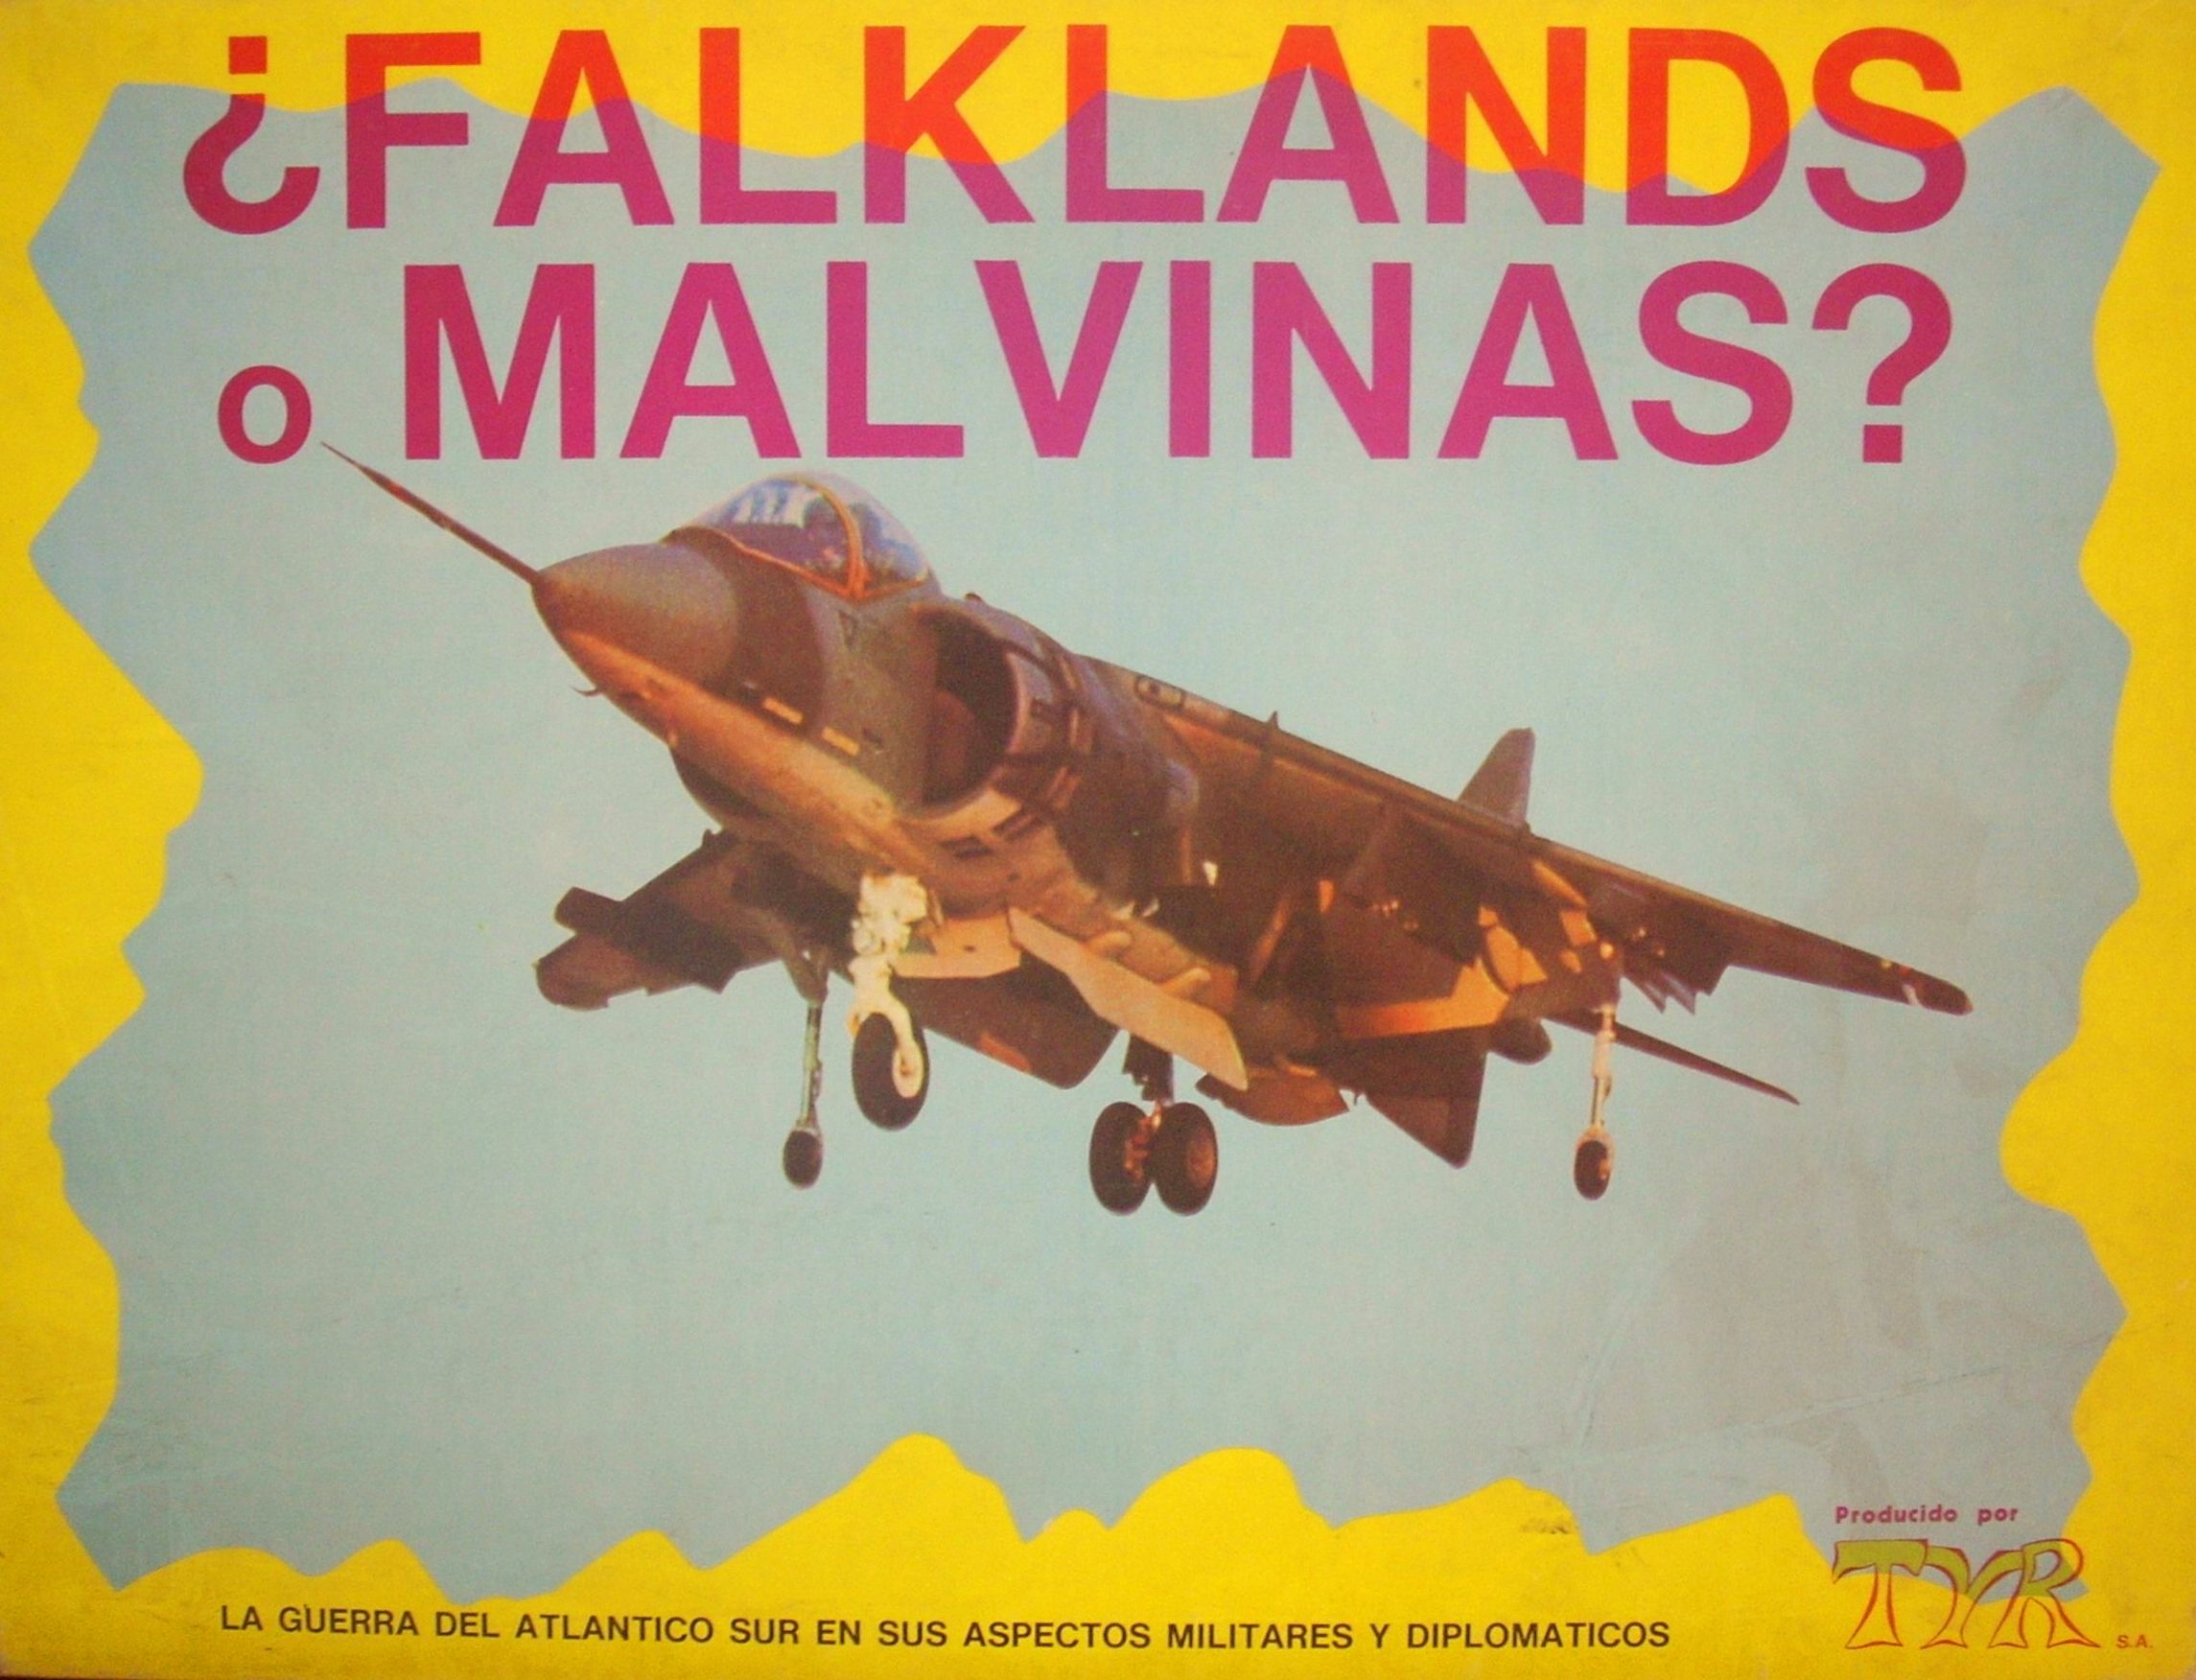 Falklands or Malvinas: The Falklands Crisis